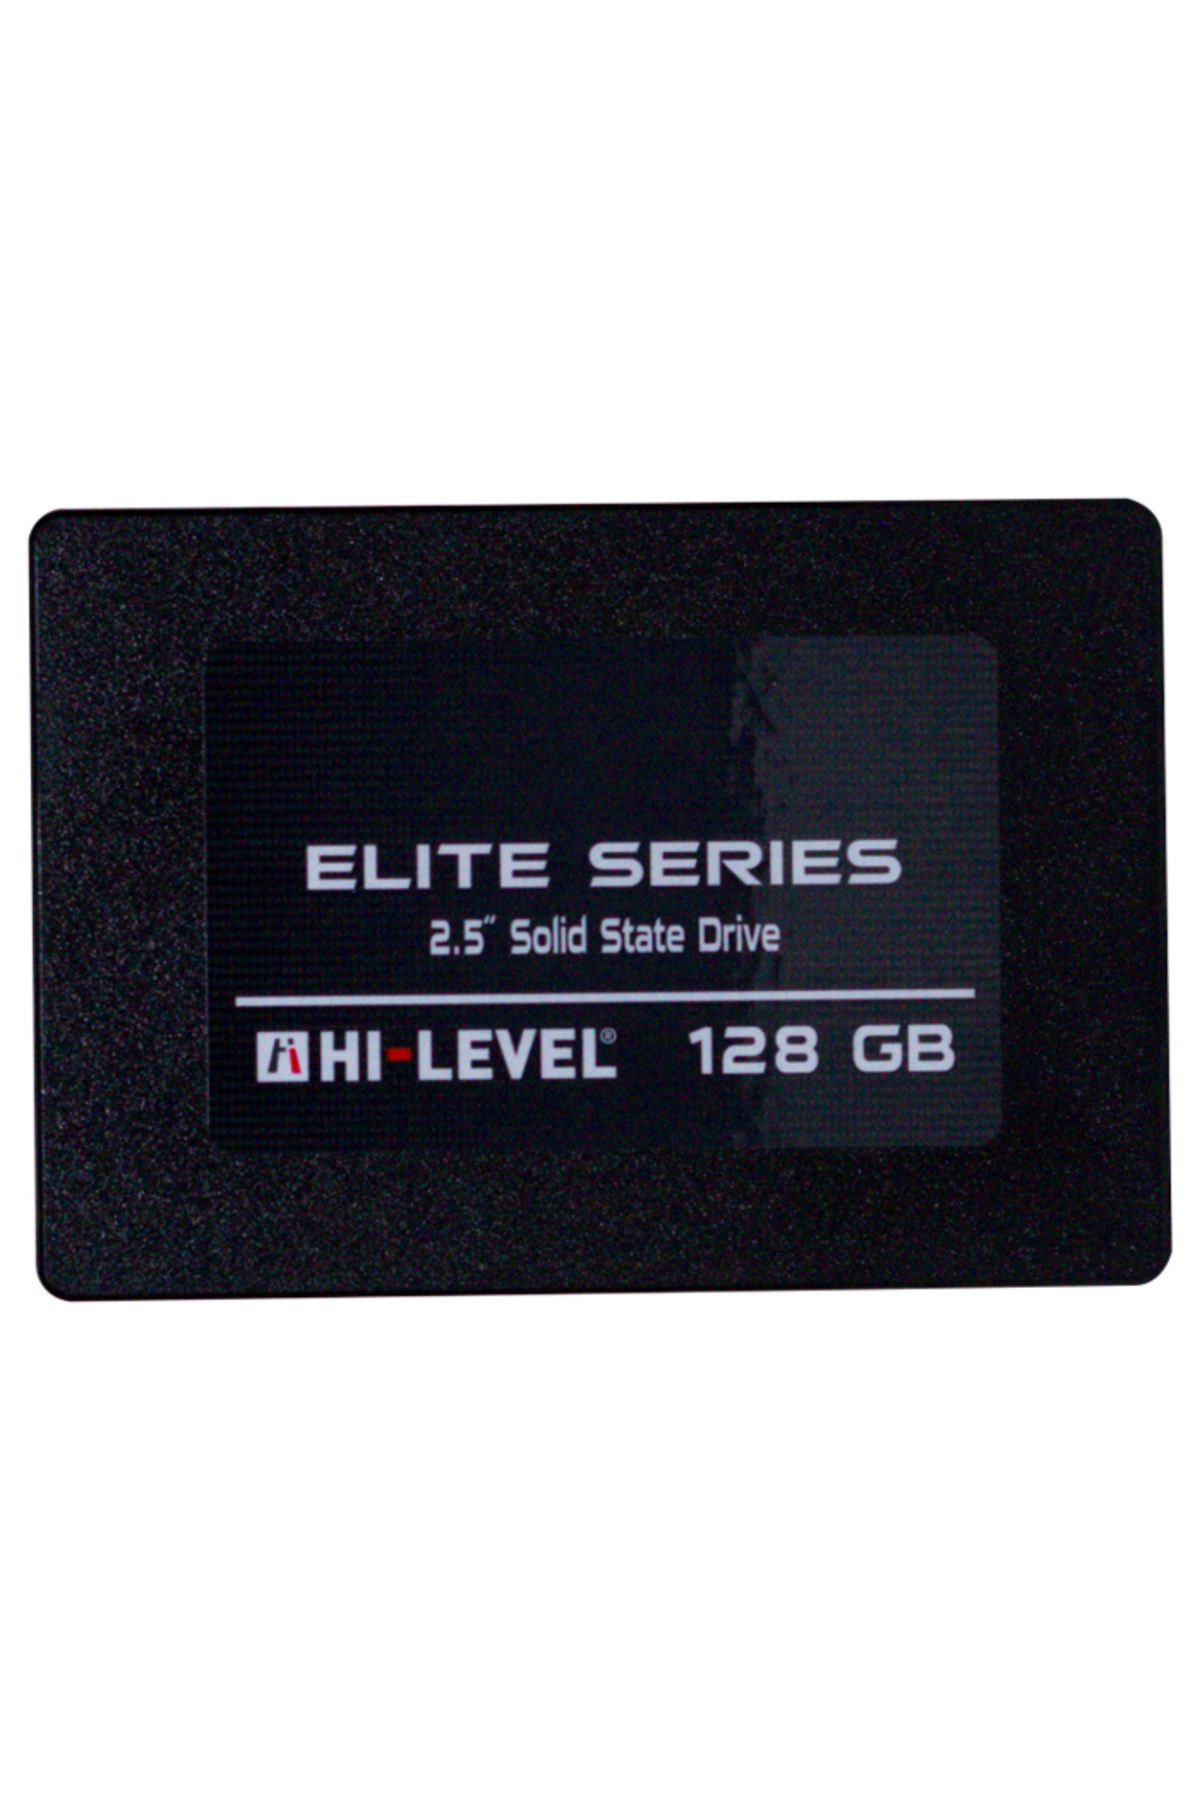 Hi-Level Elite Hlv-ssd30elt/128g 128gb 560/540mb/s 2.5" Sata3 Ssd Disk